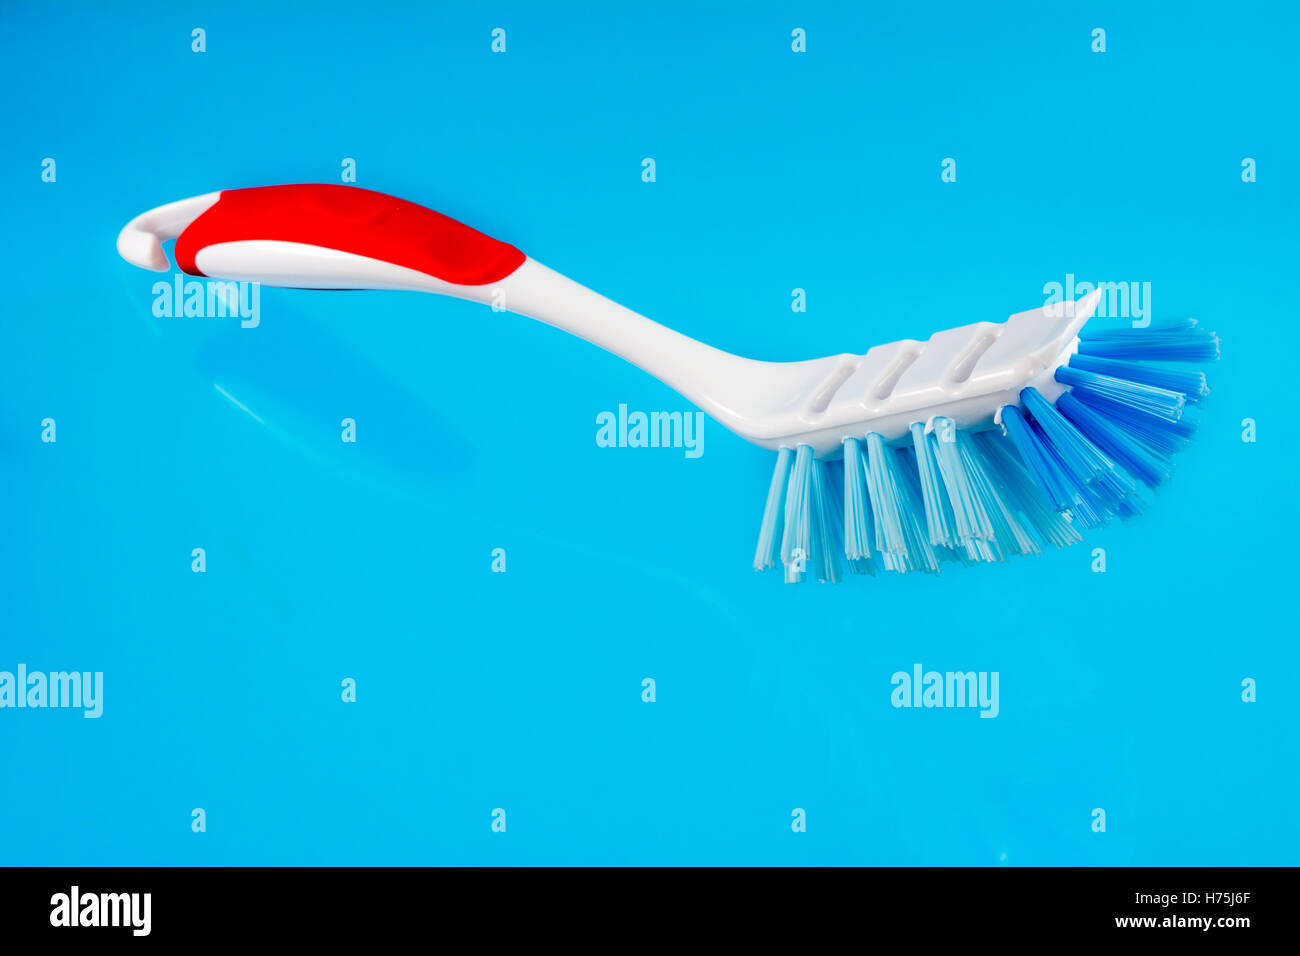 Gros plan d'objet outil bleu reflet manche en matière synthétique en plastique hygiène sanitaires nettoyage nettoyage en soies Banque D'Images